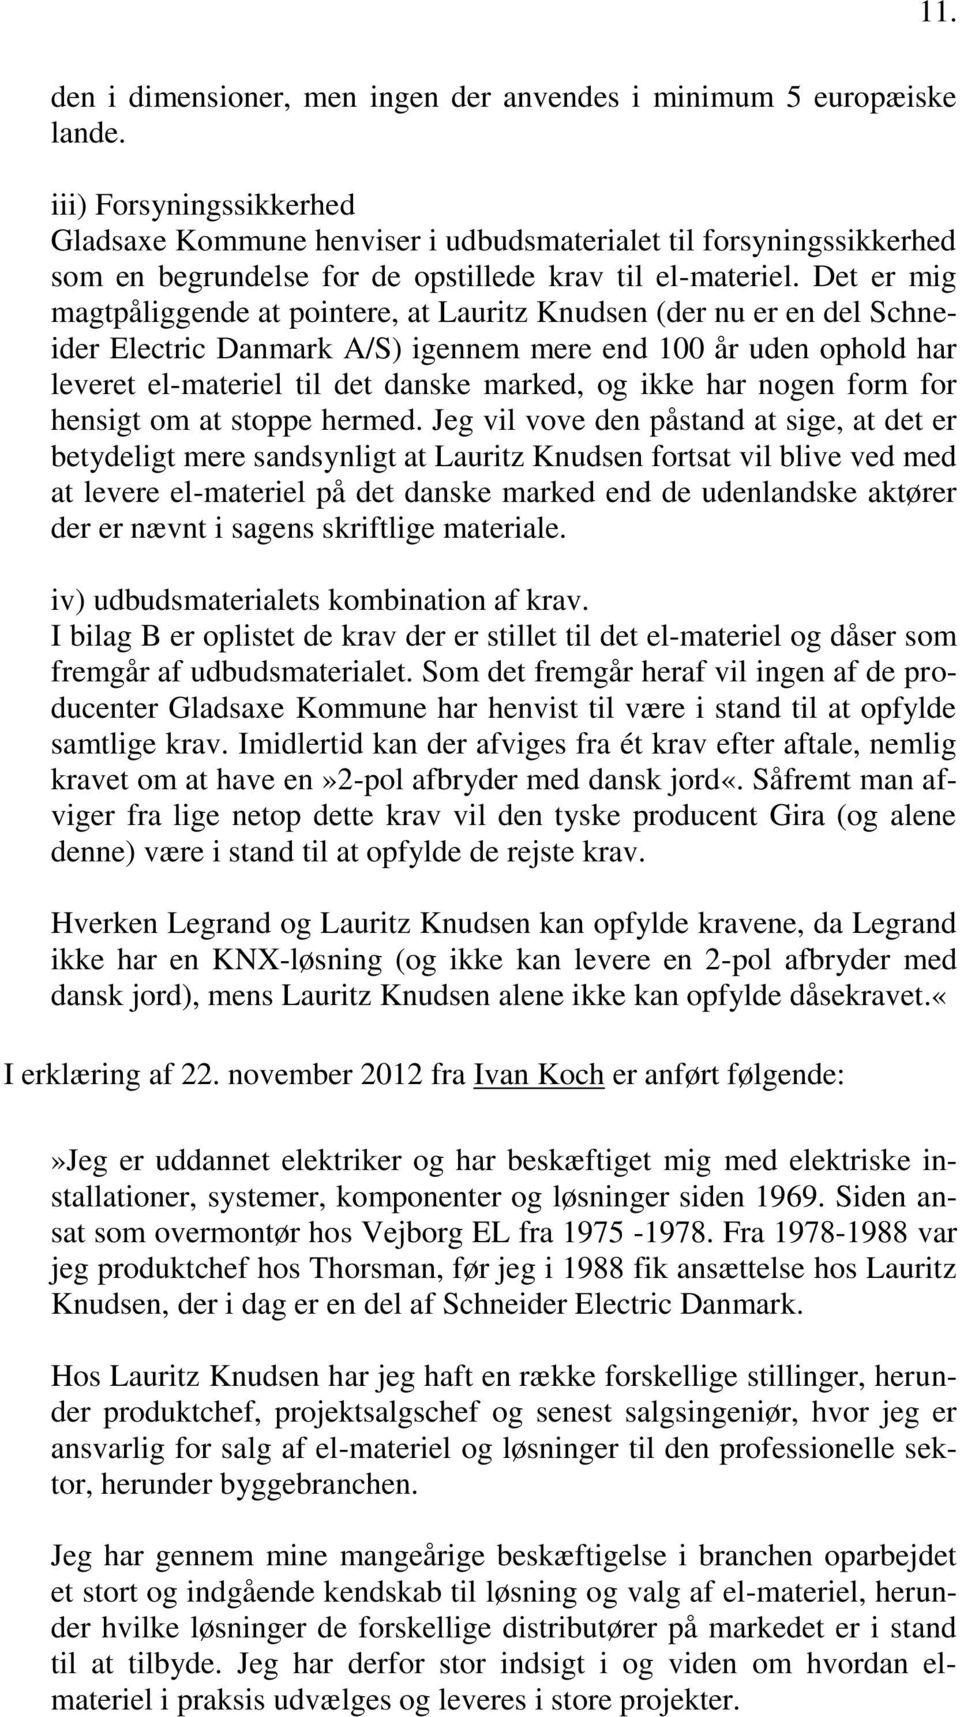 Det er mig magtpåliggende at pointere, at Lauritz Knudsen (der nu er en del Schneider Electric Danmark A/S) igennem mere end 100 år uden ophold har leveret el-materiel til det danske marked, og ikke